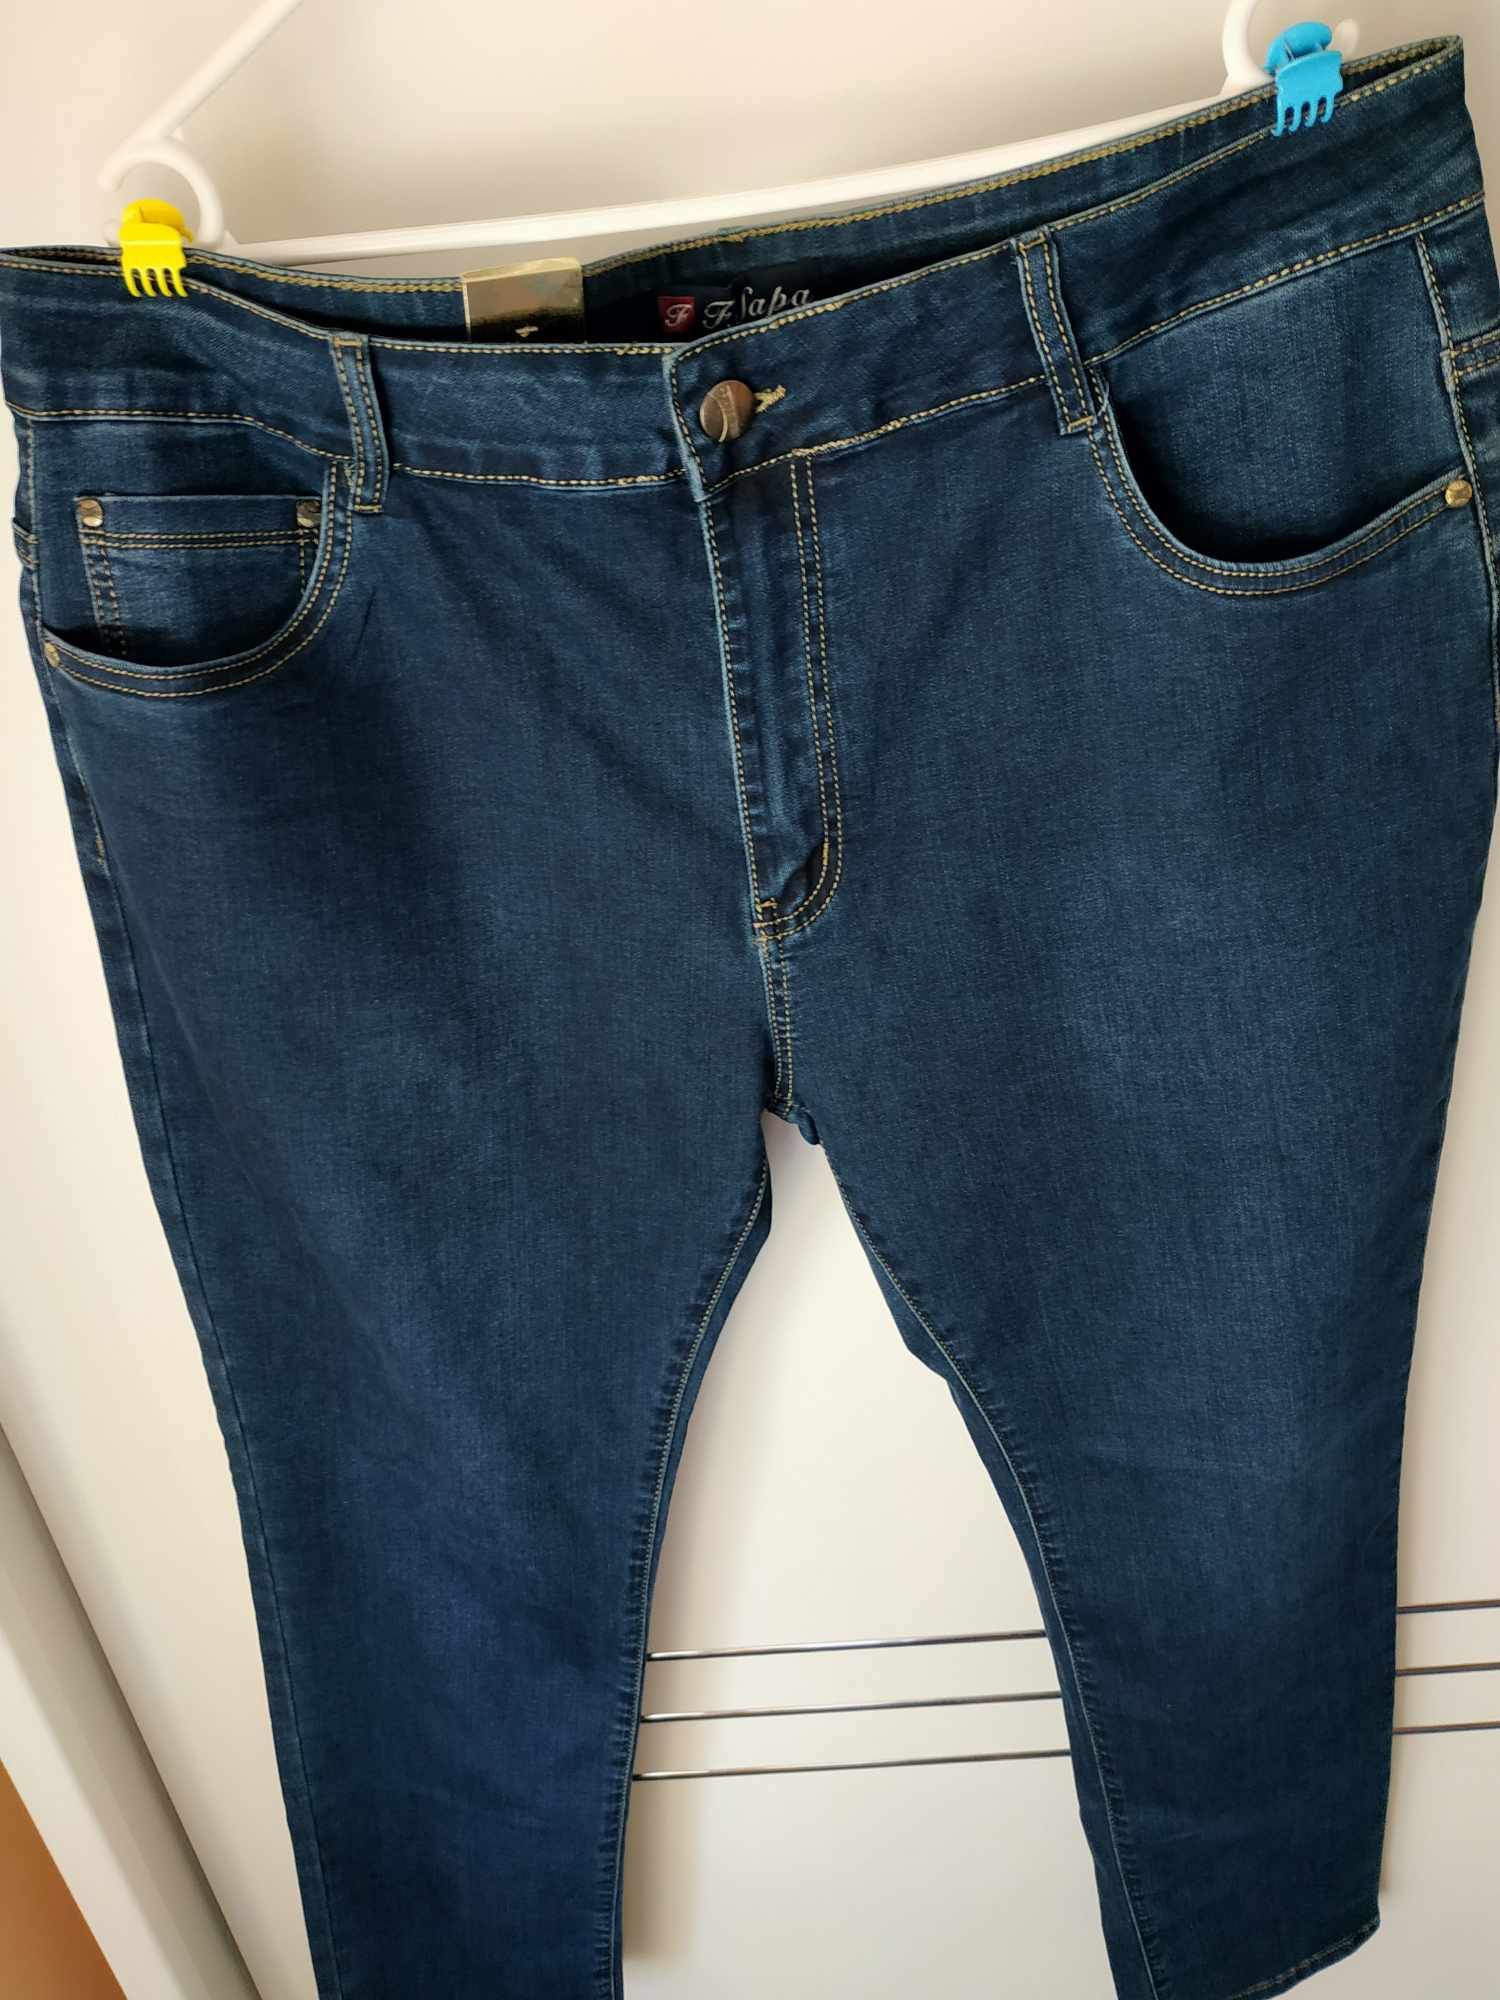 Spodnie nowe dżinsowe damskie 42 duży rozmiar